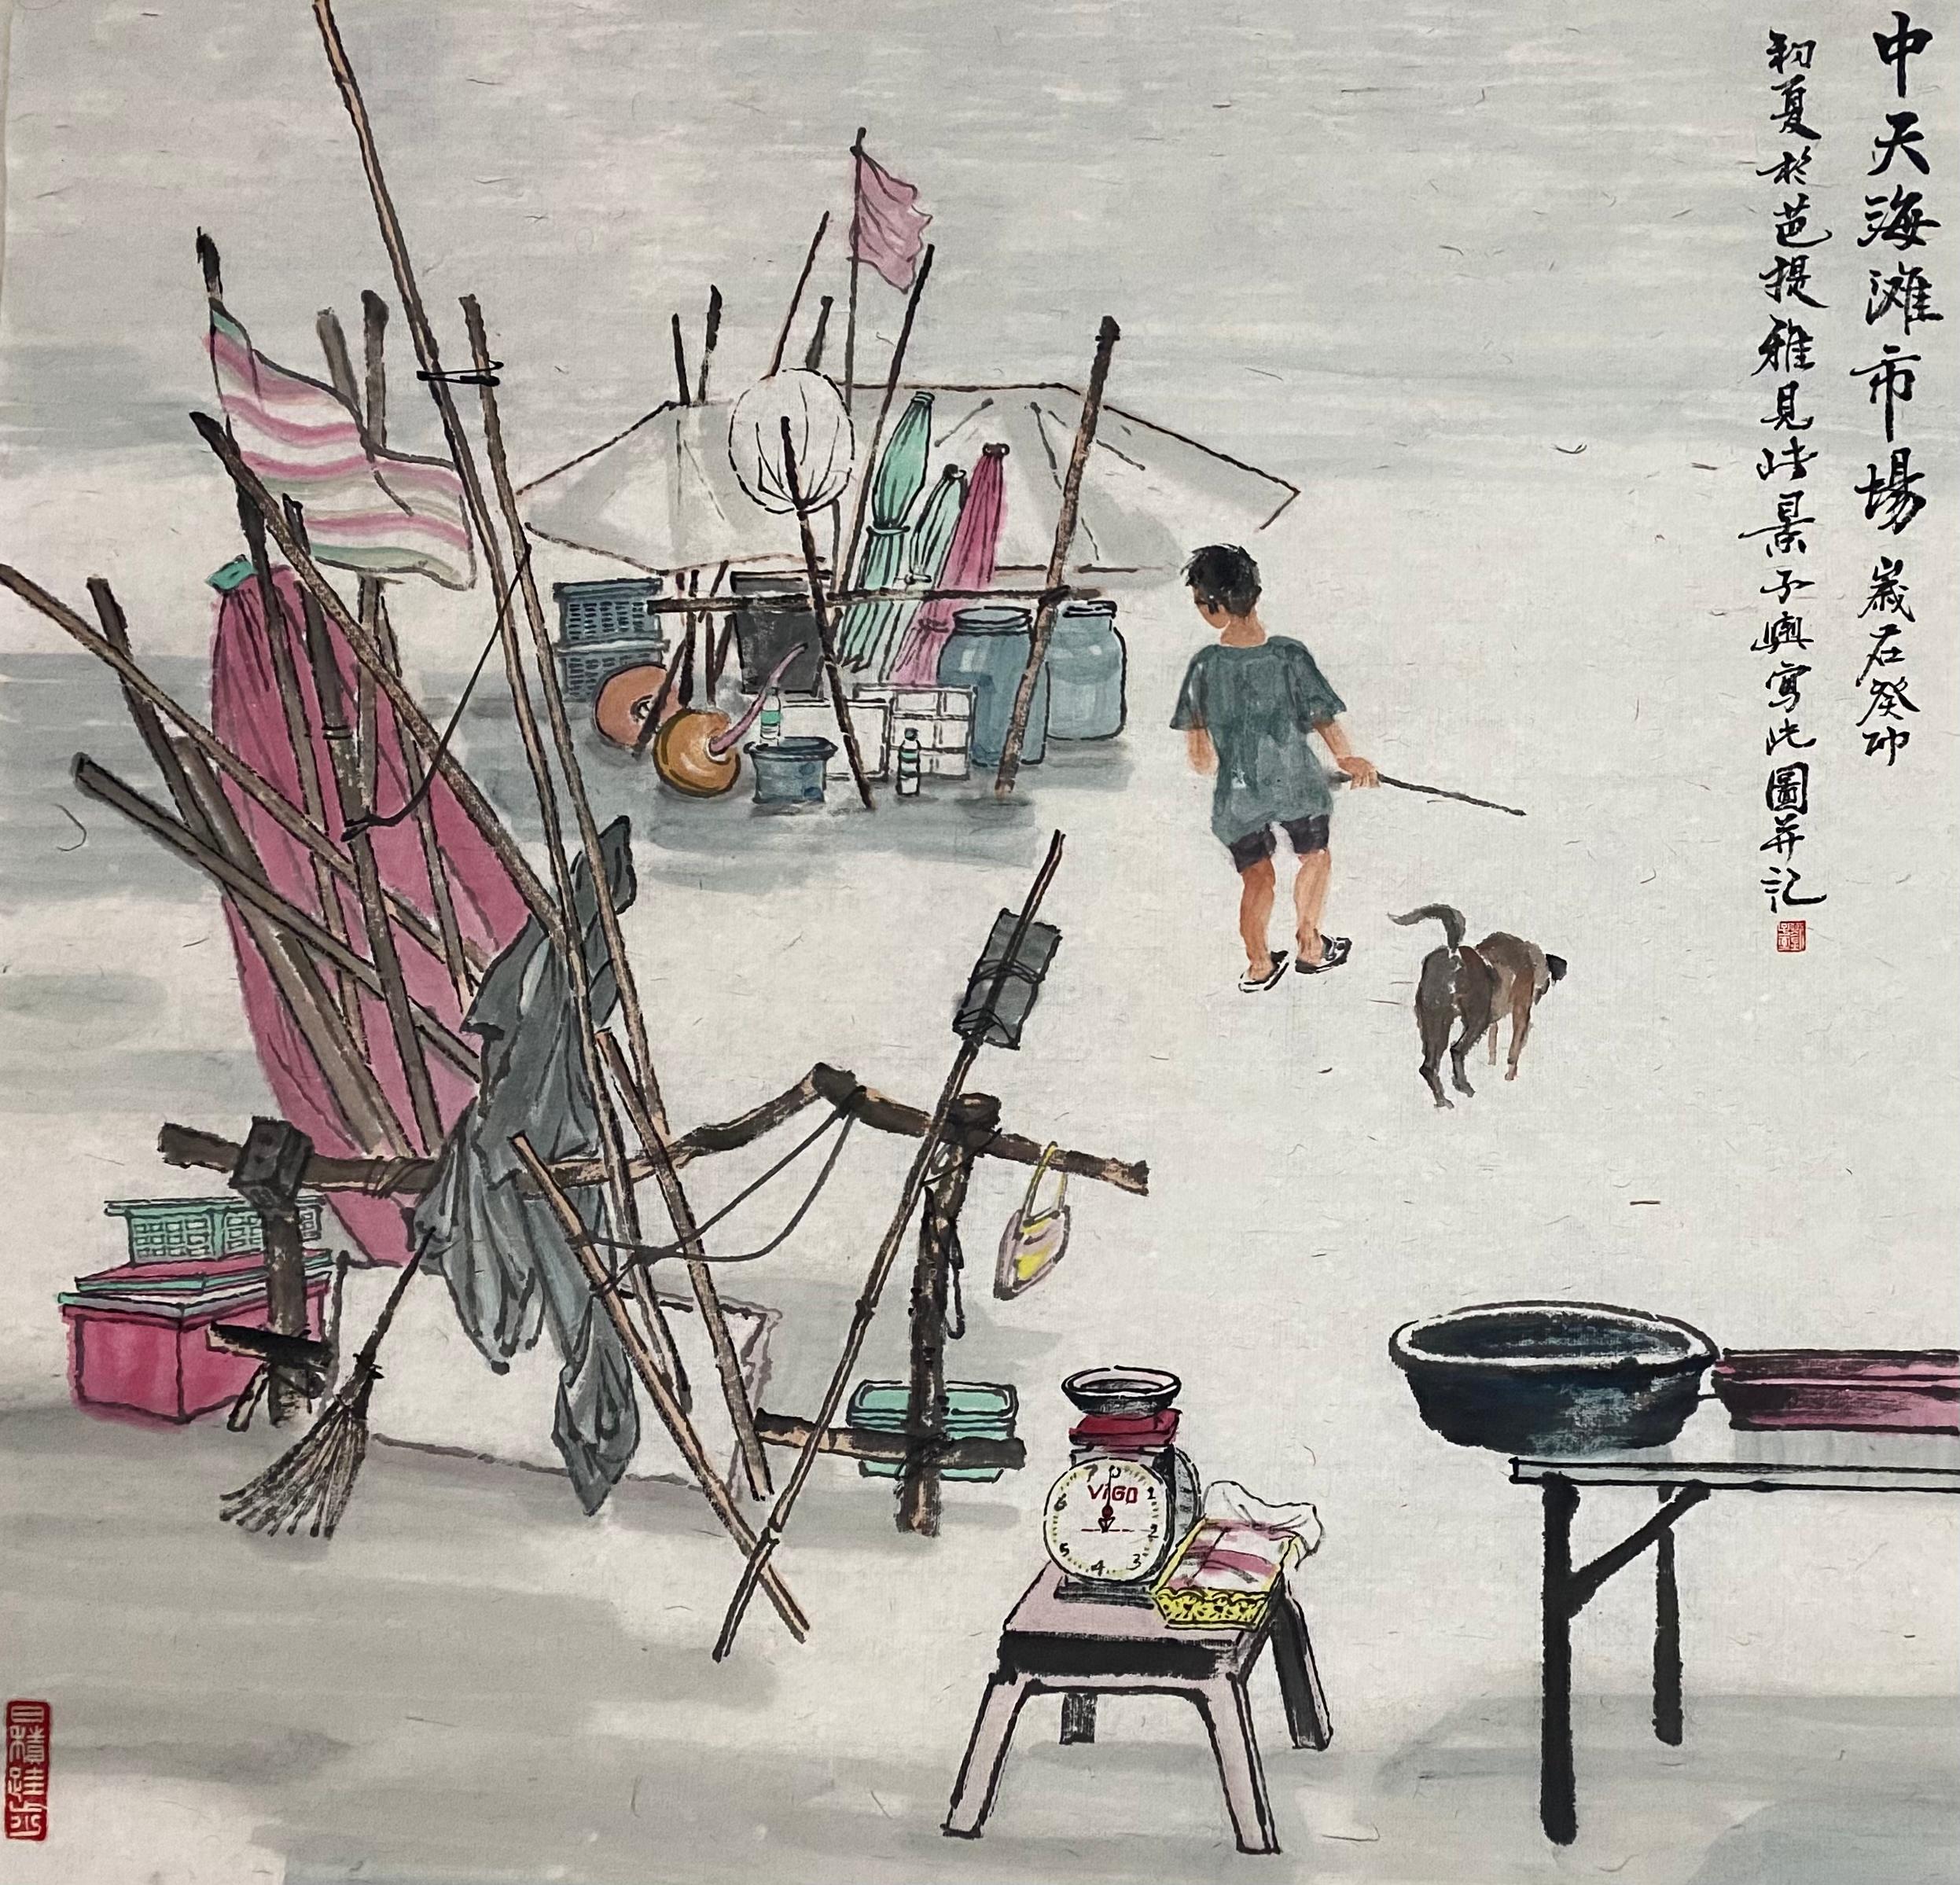 Tinte auf Papier

Liu Ziyu ist ein 1978 geborener chinesischer Künstler, der in Peking lebt und arbeitet. Er schloss 2020 sein Studium an der Moskauer Staatlichen Stroganow-Akademie für Kunst und Industrie mit einem Doktortitel ab. Er ist Mitglied